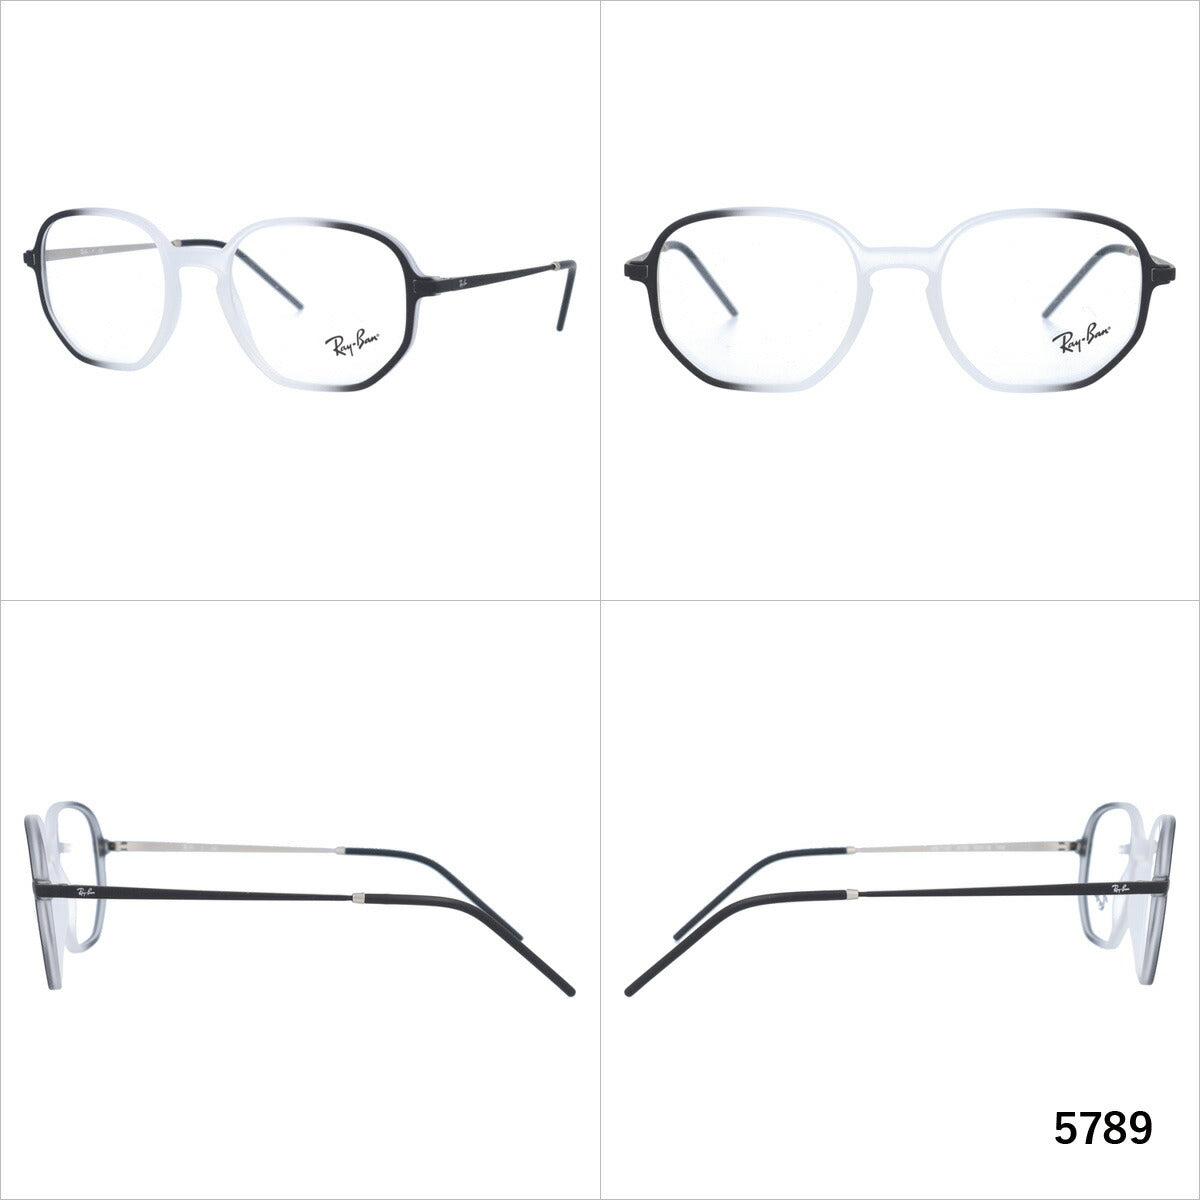 レイバン メガネ フレーム RX7152 5789・5790 52 レギュラーフィット スクエア型 メンズ レディース 眼鏡 度付き 度なし 伊達メガネ ブランドメガネ 紫外線 ブルーライトカット 老眼鏡 花粉対策 Ray-Ban